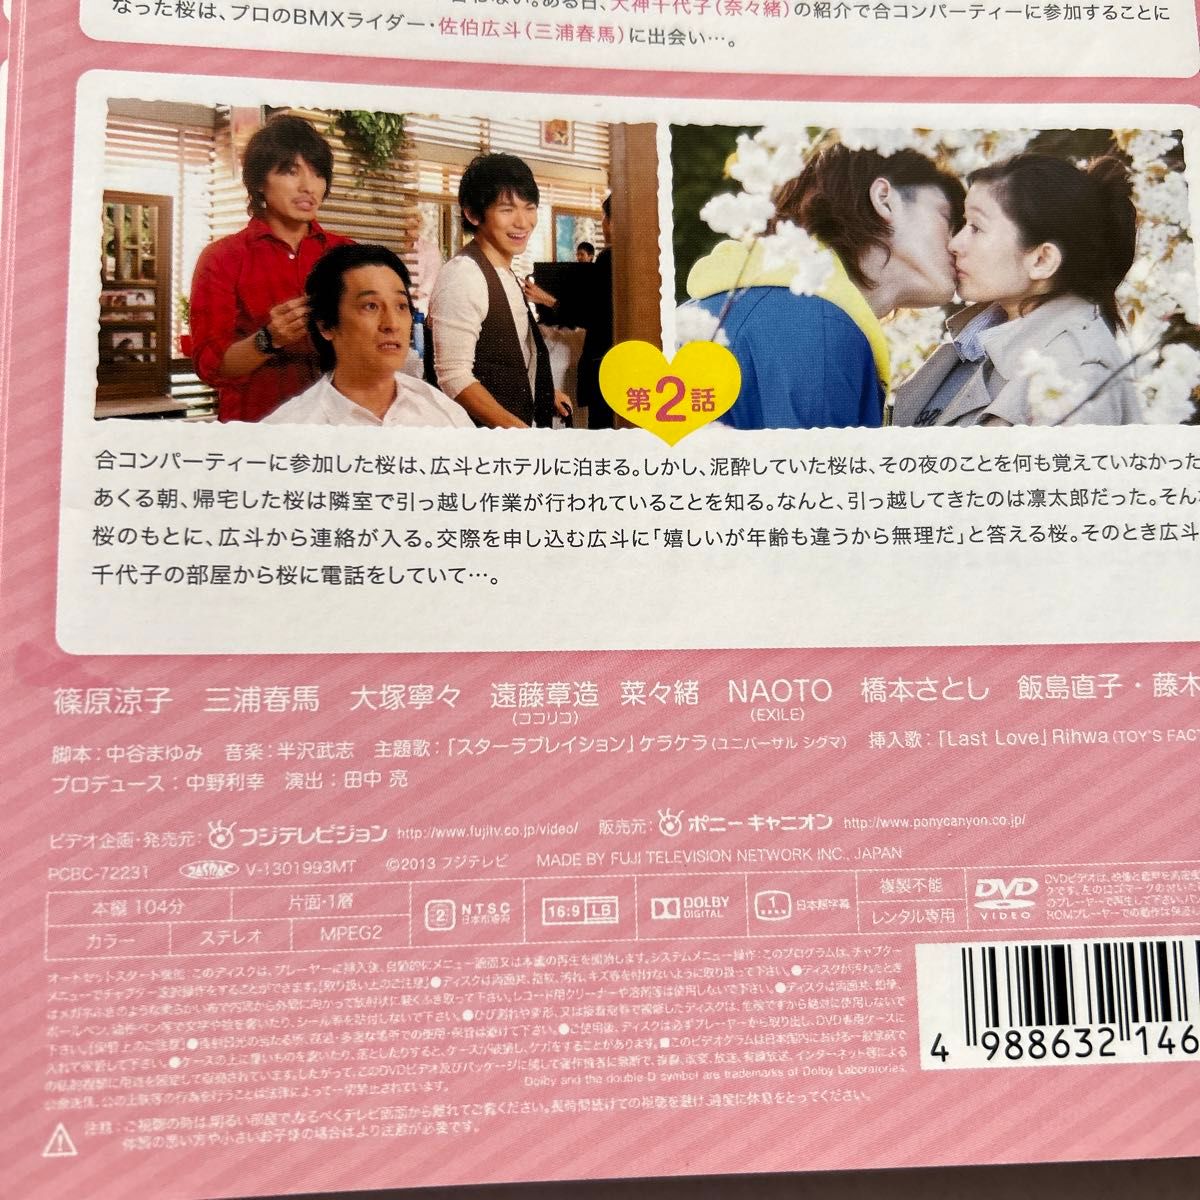 ラスト シンデレラ 全6巻 レンタル版DVD